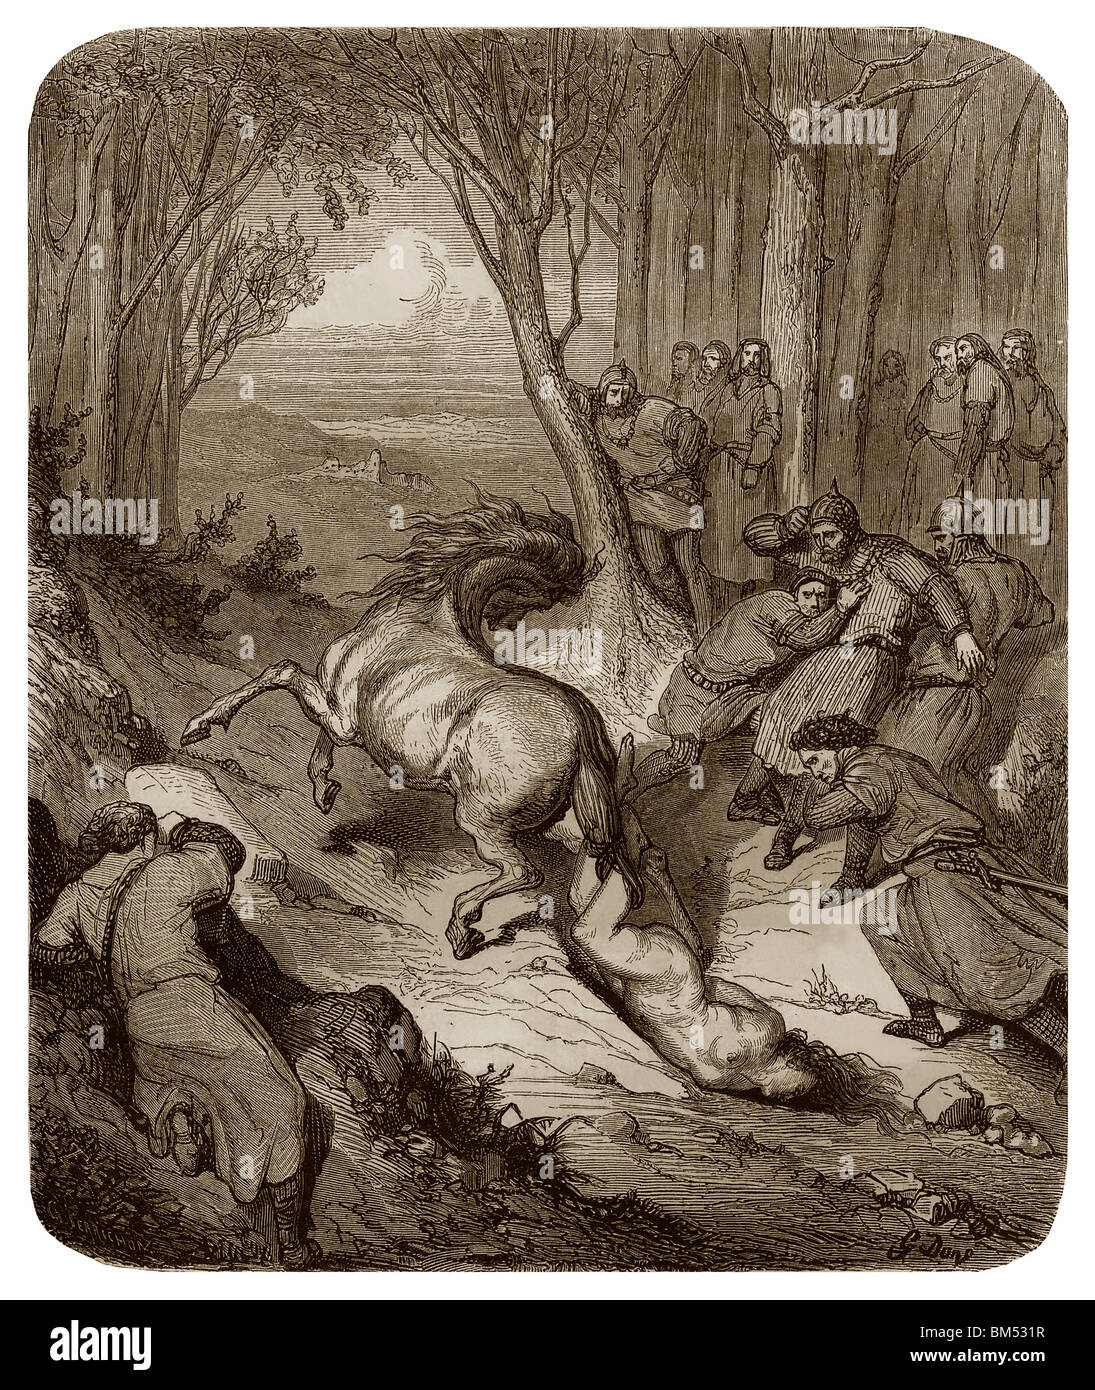 En 613, Brunhilda était liée à la queue d'un cheval sauvage et son corps était alors membre après membre déchiré et brûlé dans Jancigny. Banque D'Images